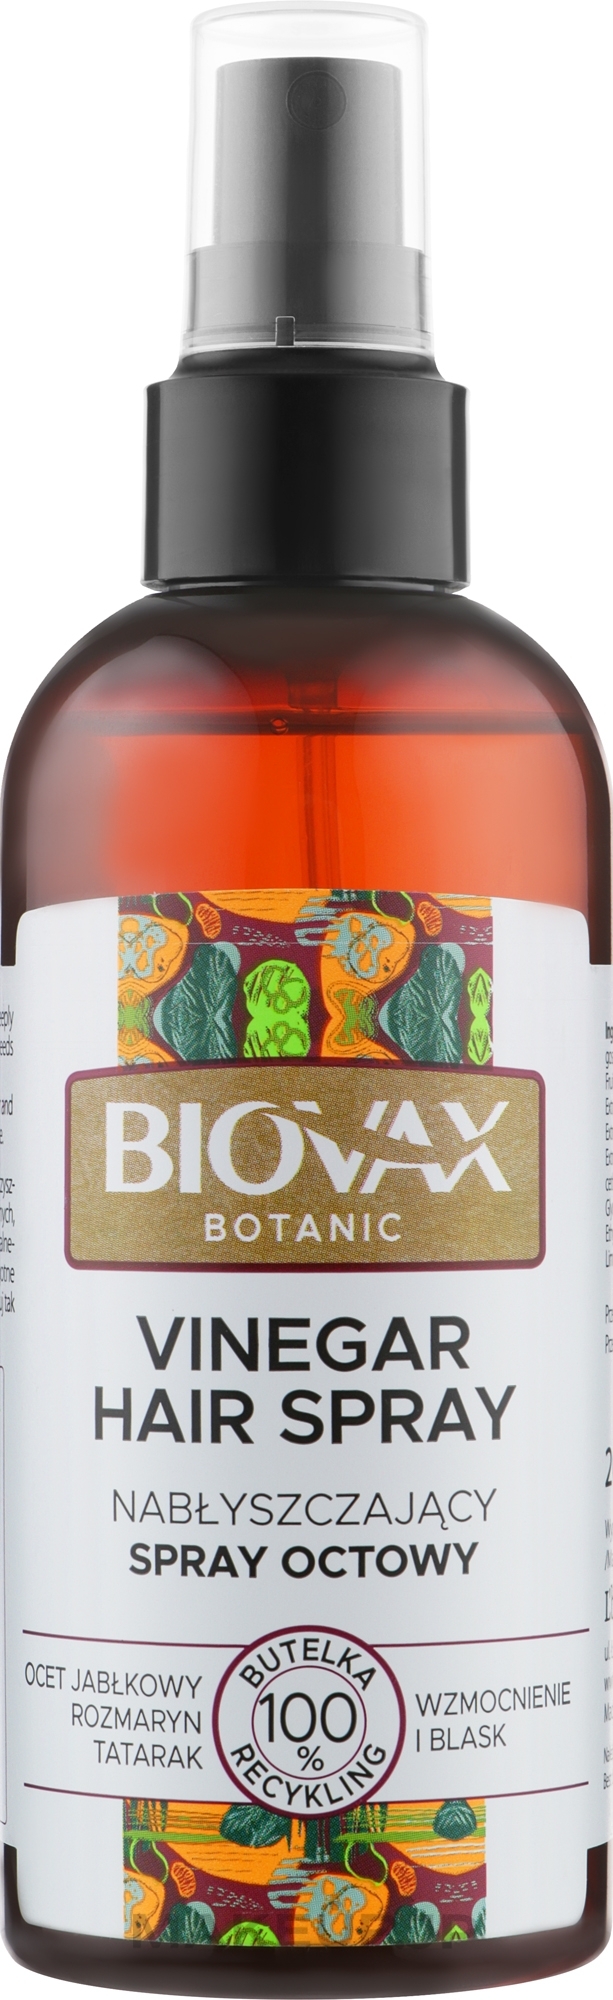 Hair Spray 'Apple Vinegar' - L'biotica Biovax Botanic Hair Sprey — photo 200 ml